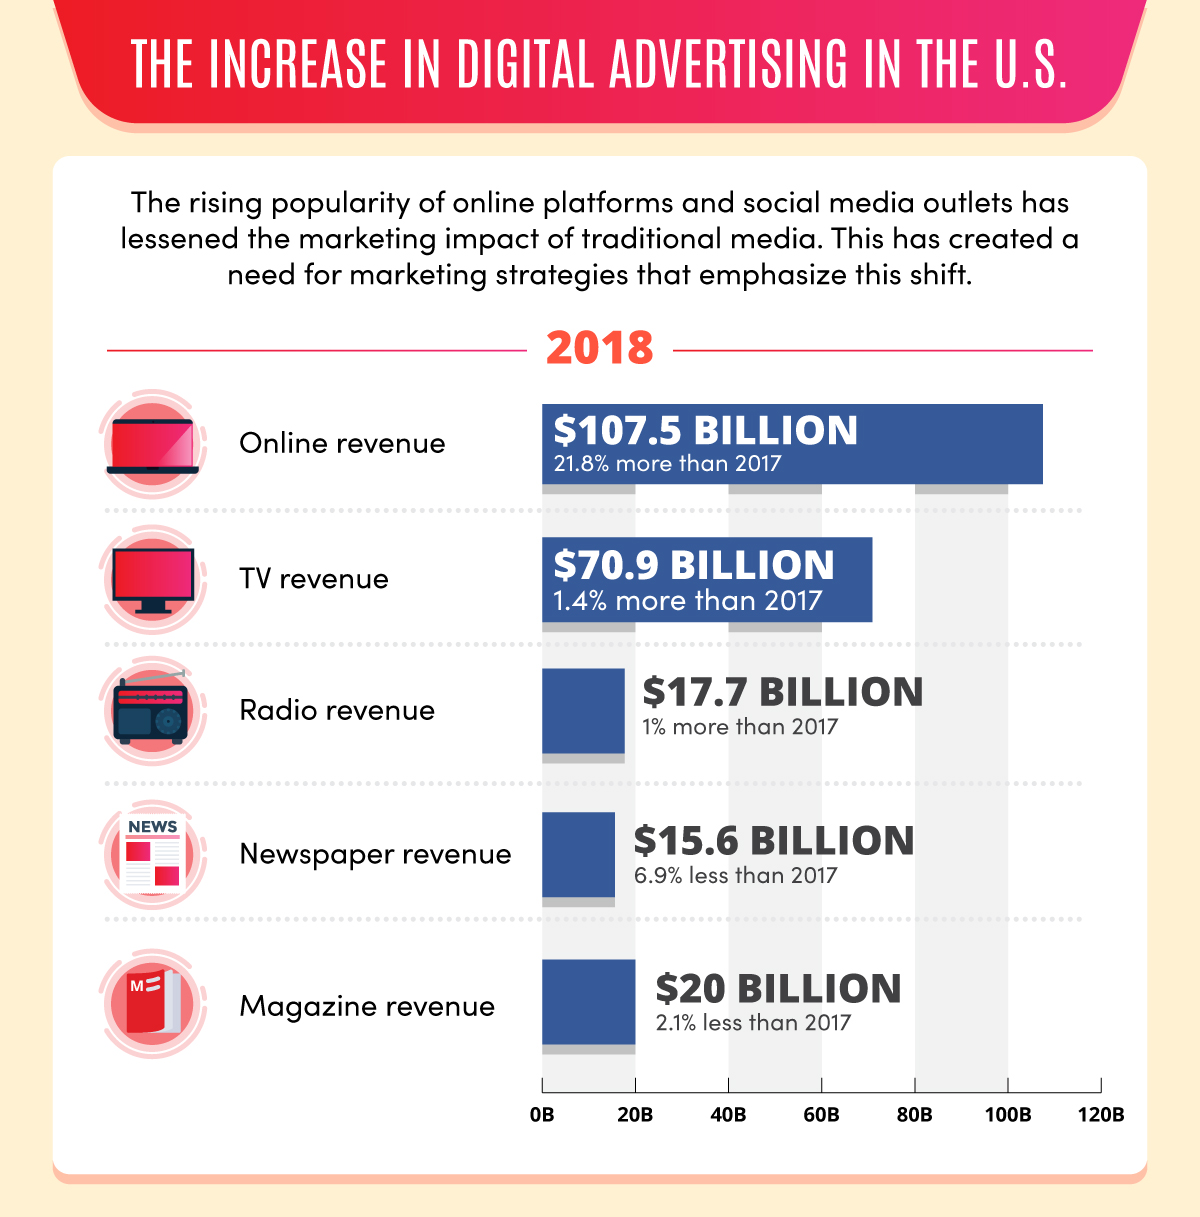 increases in digital advertising in the US